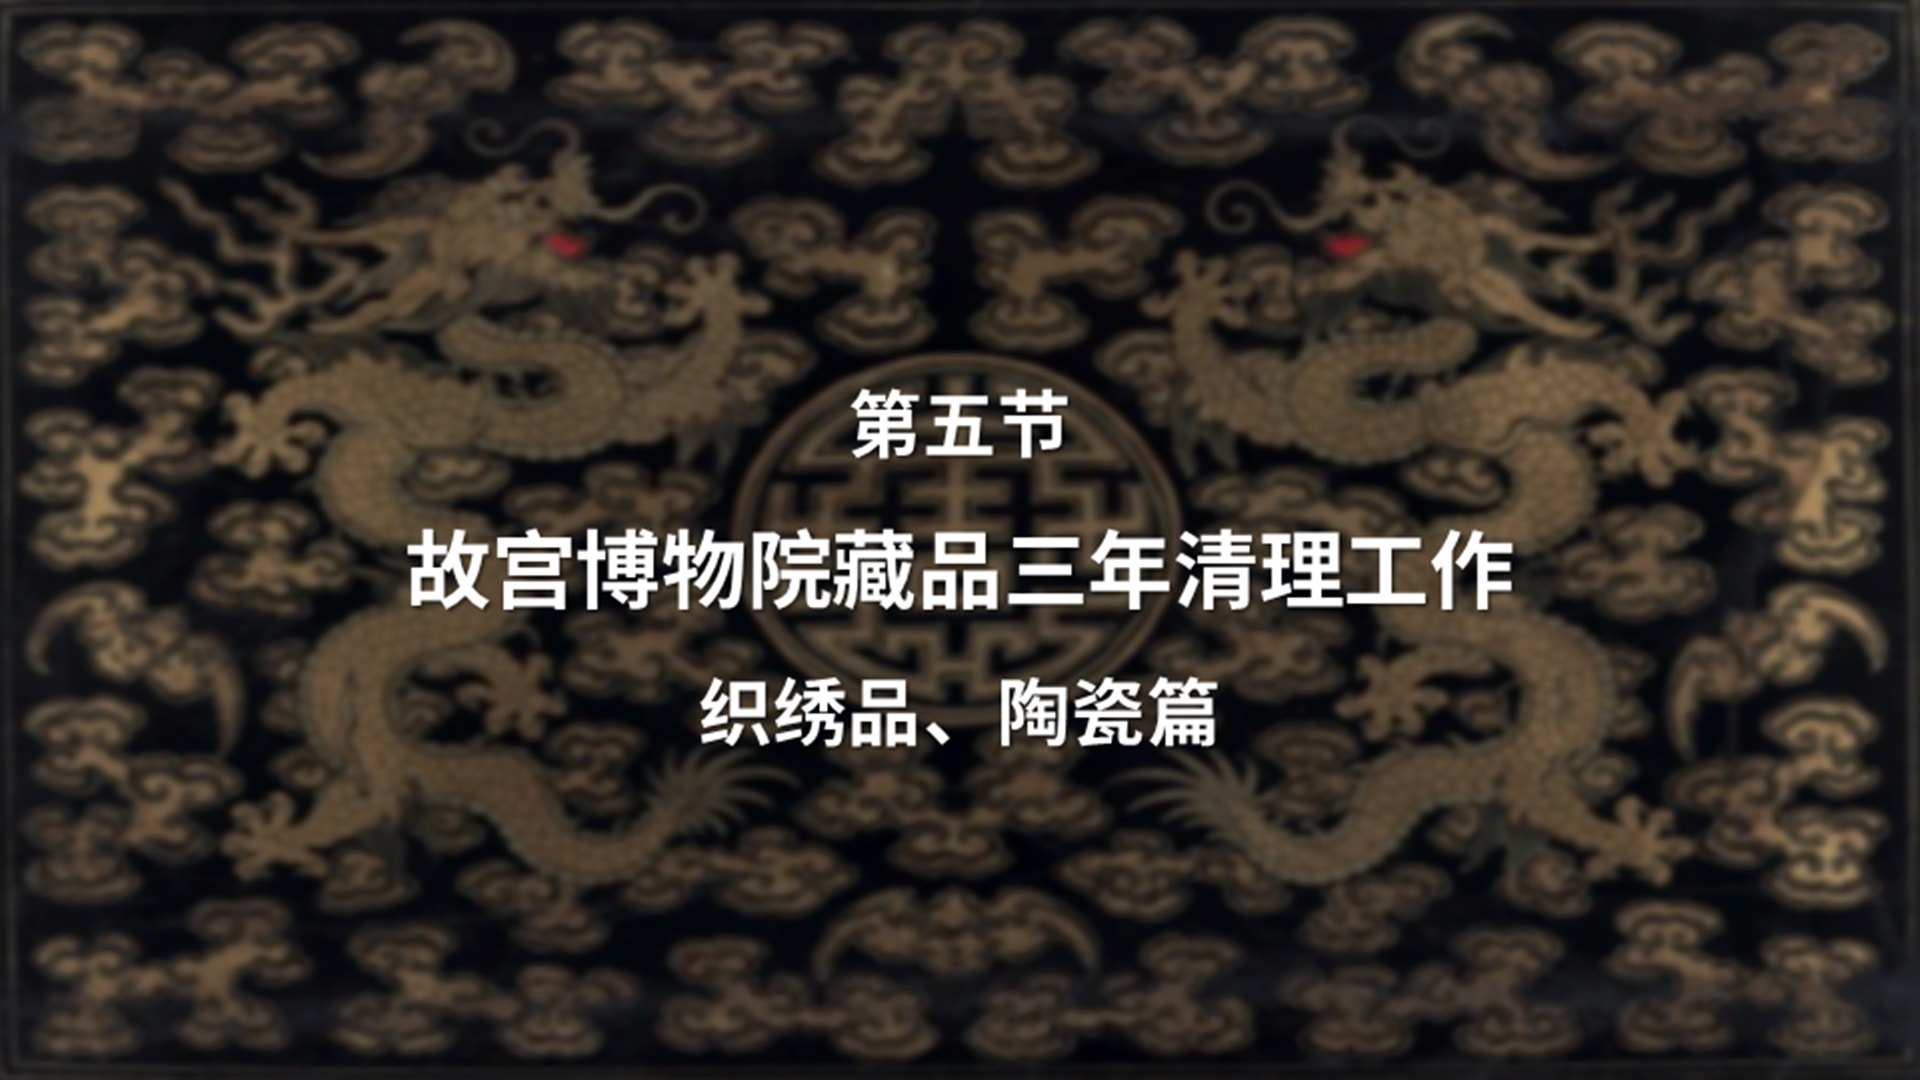 第五节：故宫博物院藏品三年清理工作——织绣品、陶瓷篇